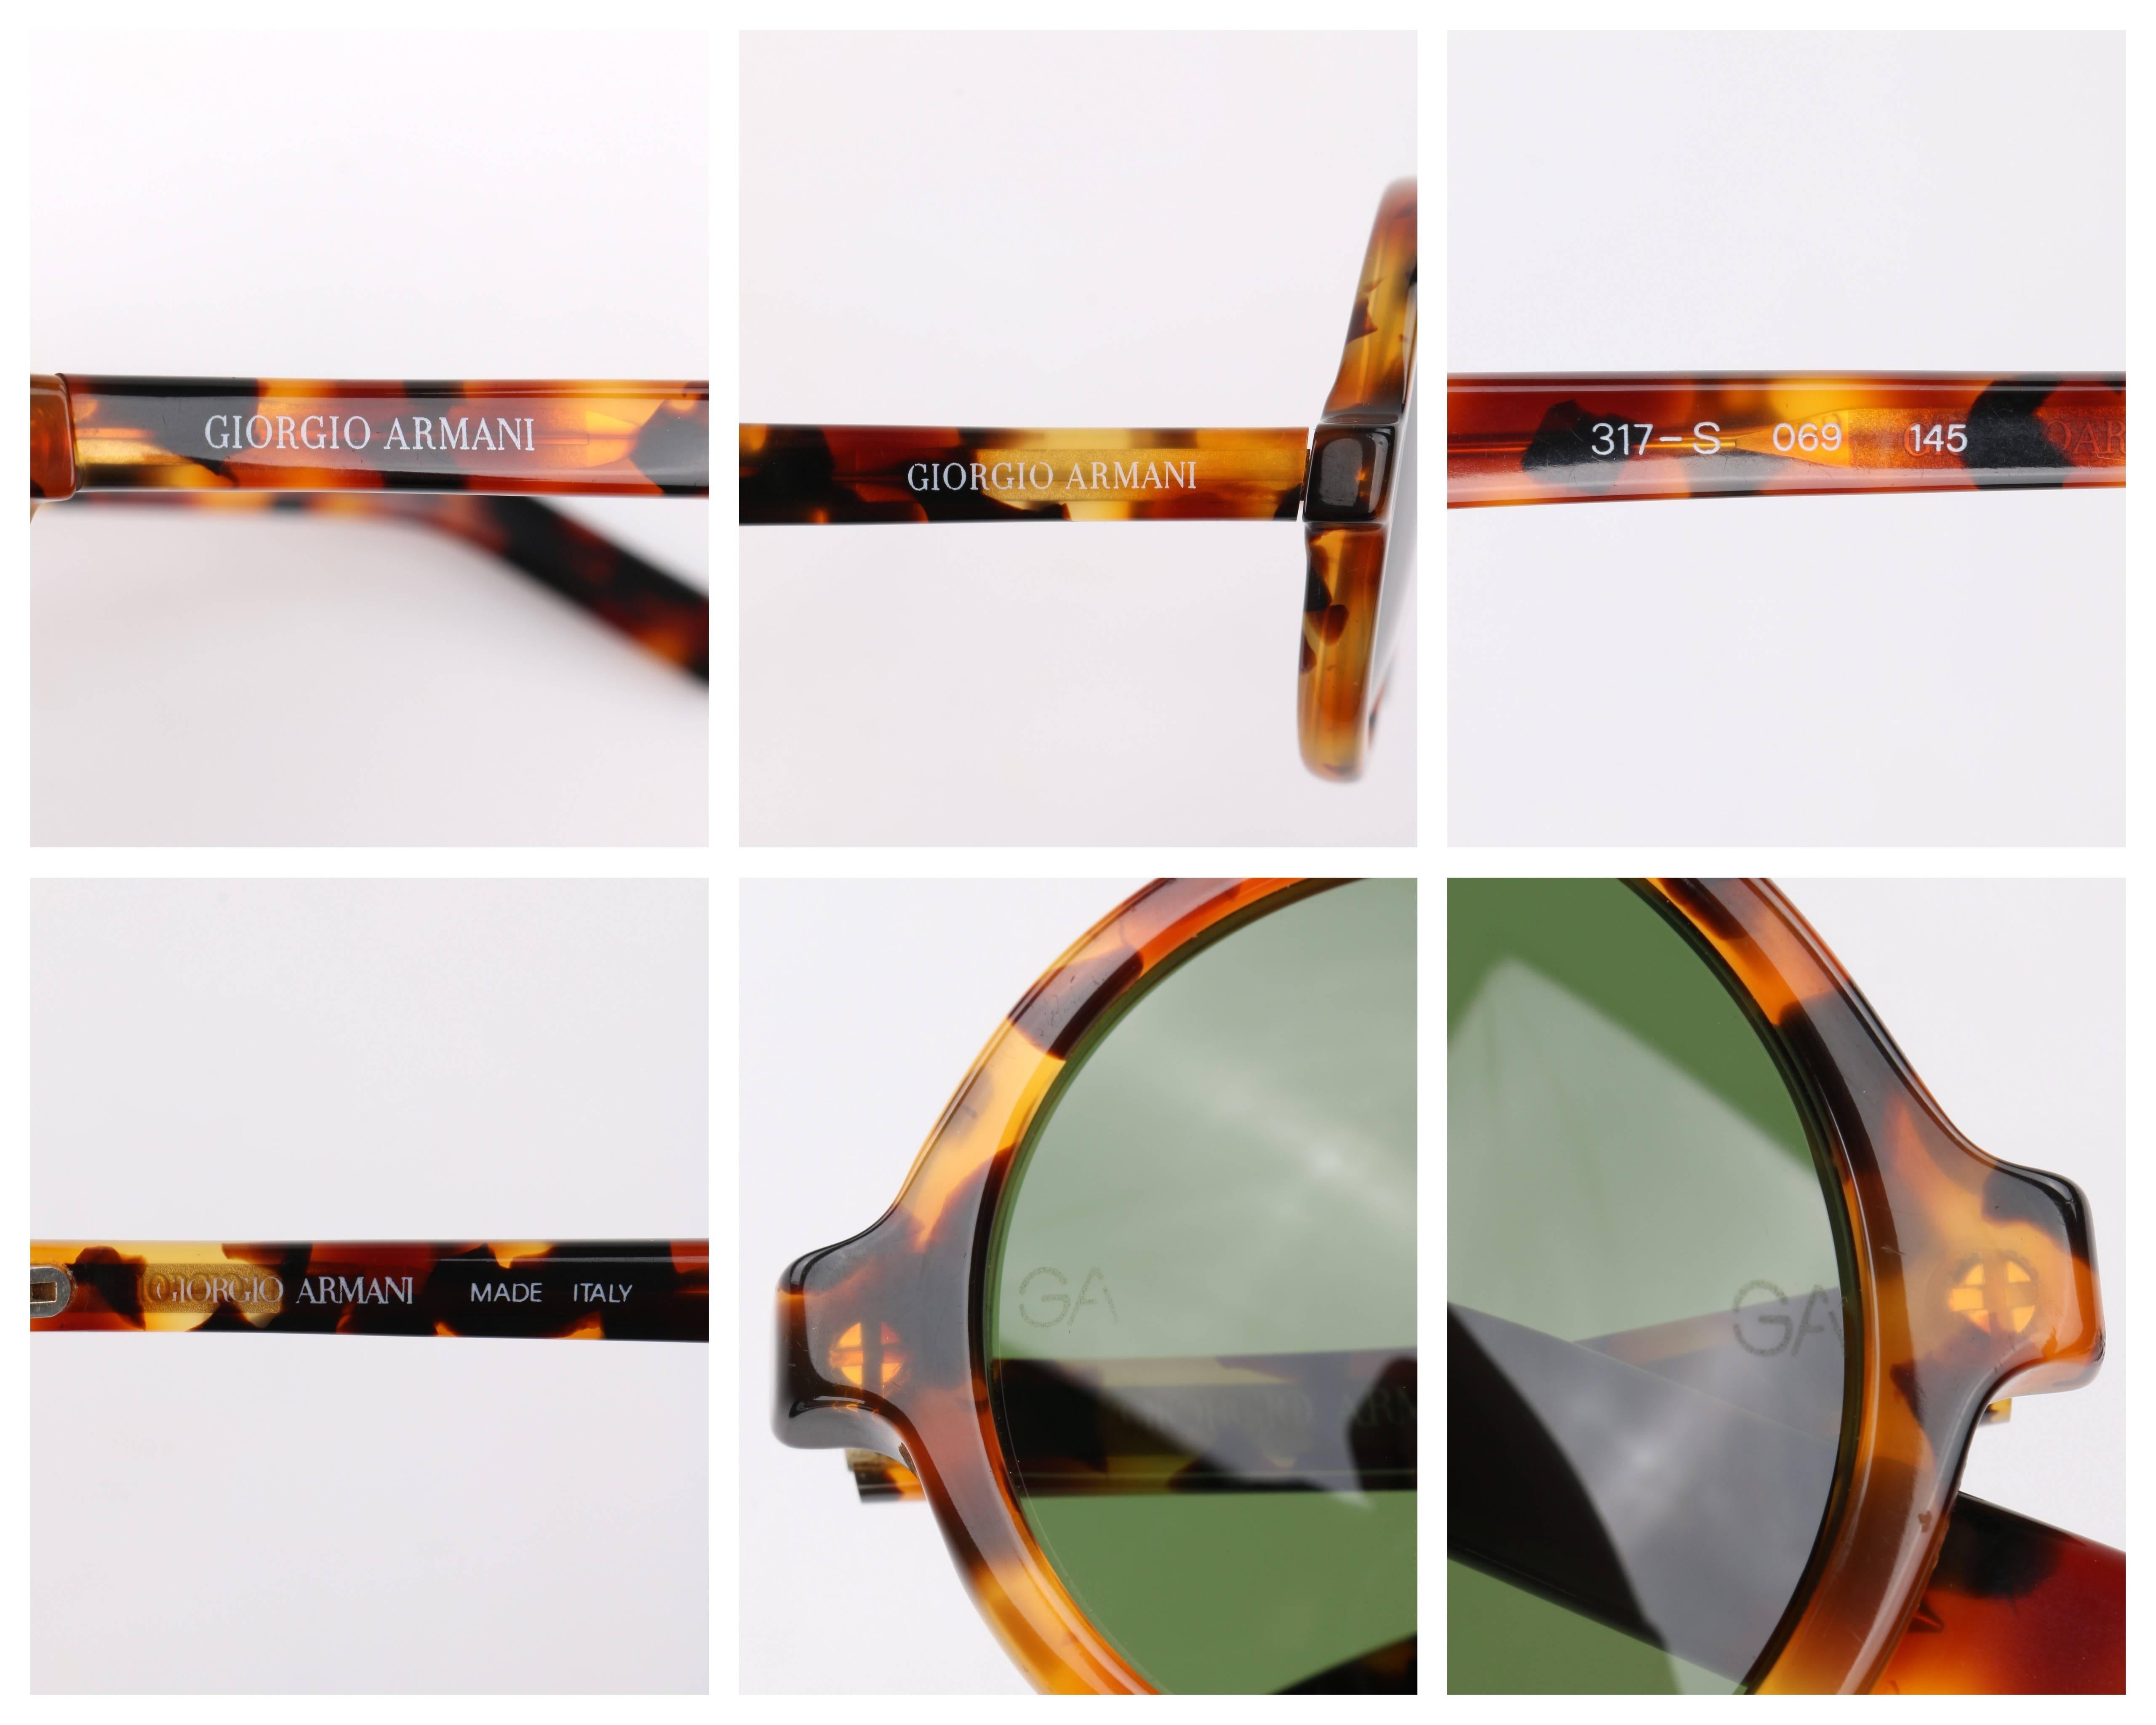 Men's GIORGIO ARMANI c.1990's Round Tortoiseshell Frame Sunglasses 617-S 069 RARE